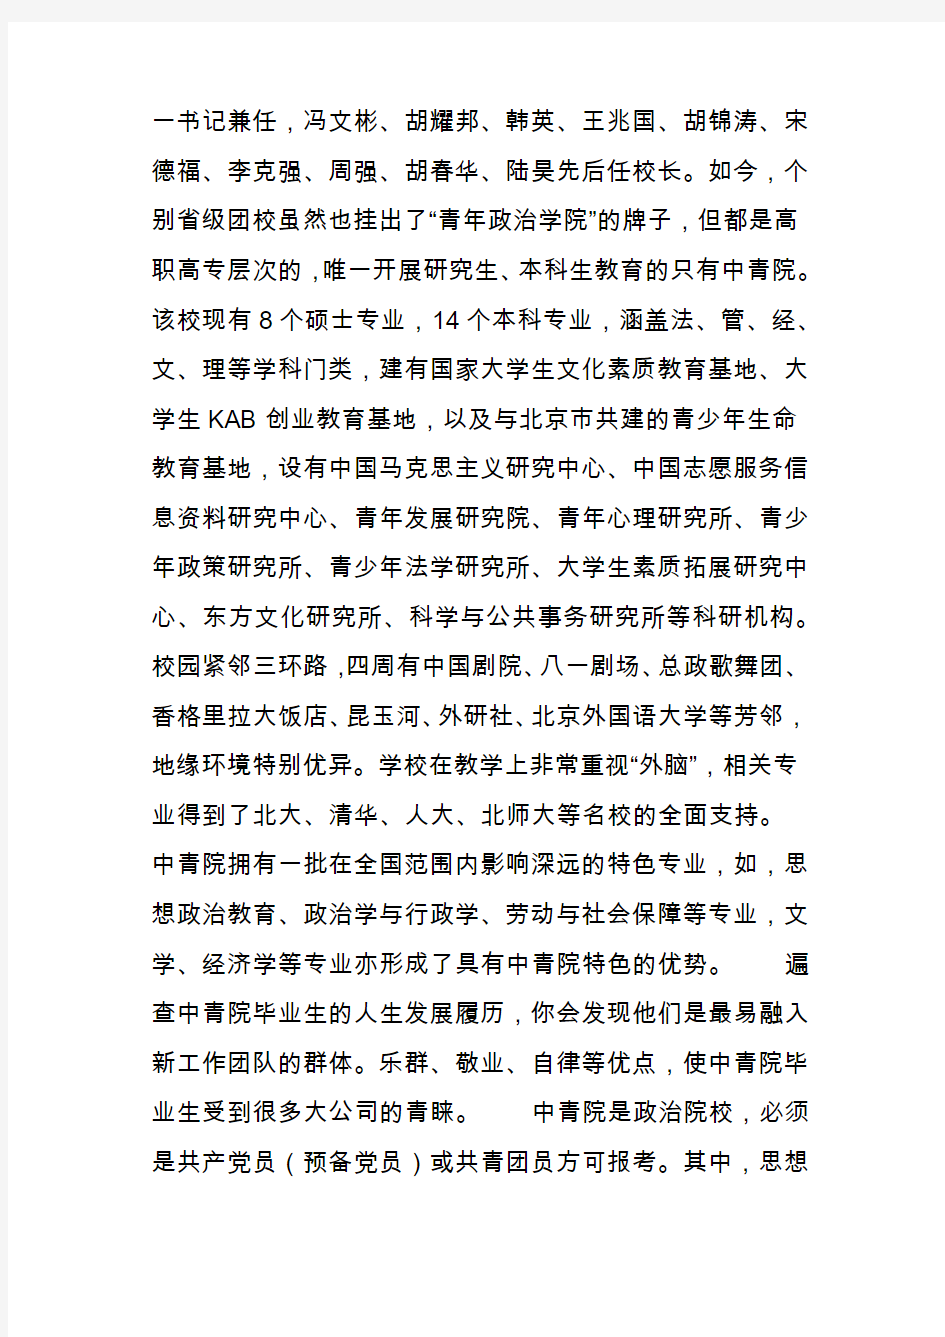 解读中国十所“独一无二”的高校： 1.中国青年政治学院 2,国际关系学院3,外交学院、、、、、 – 【人人分